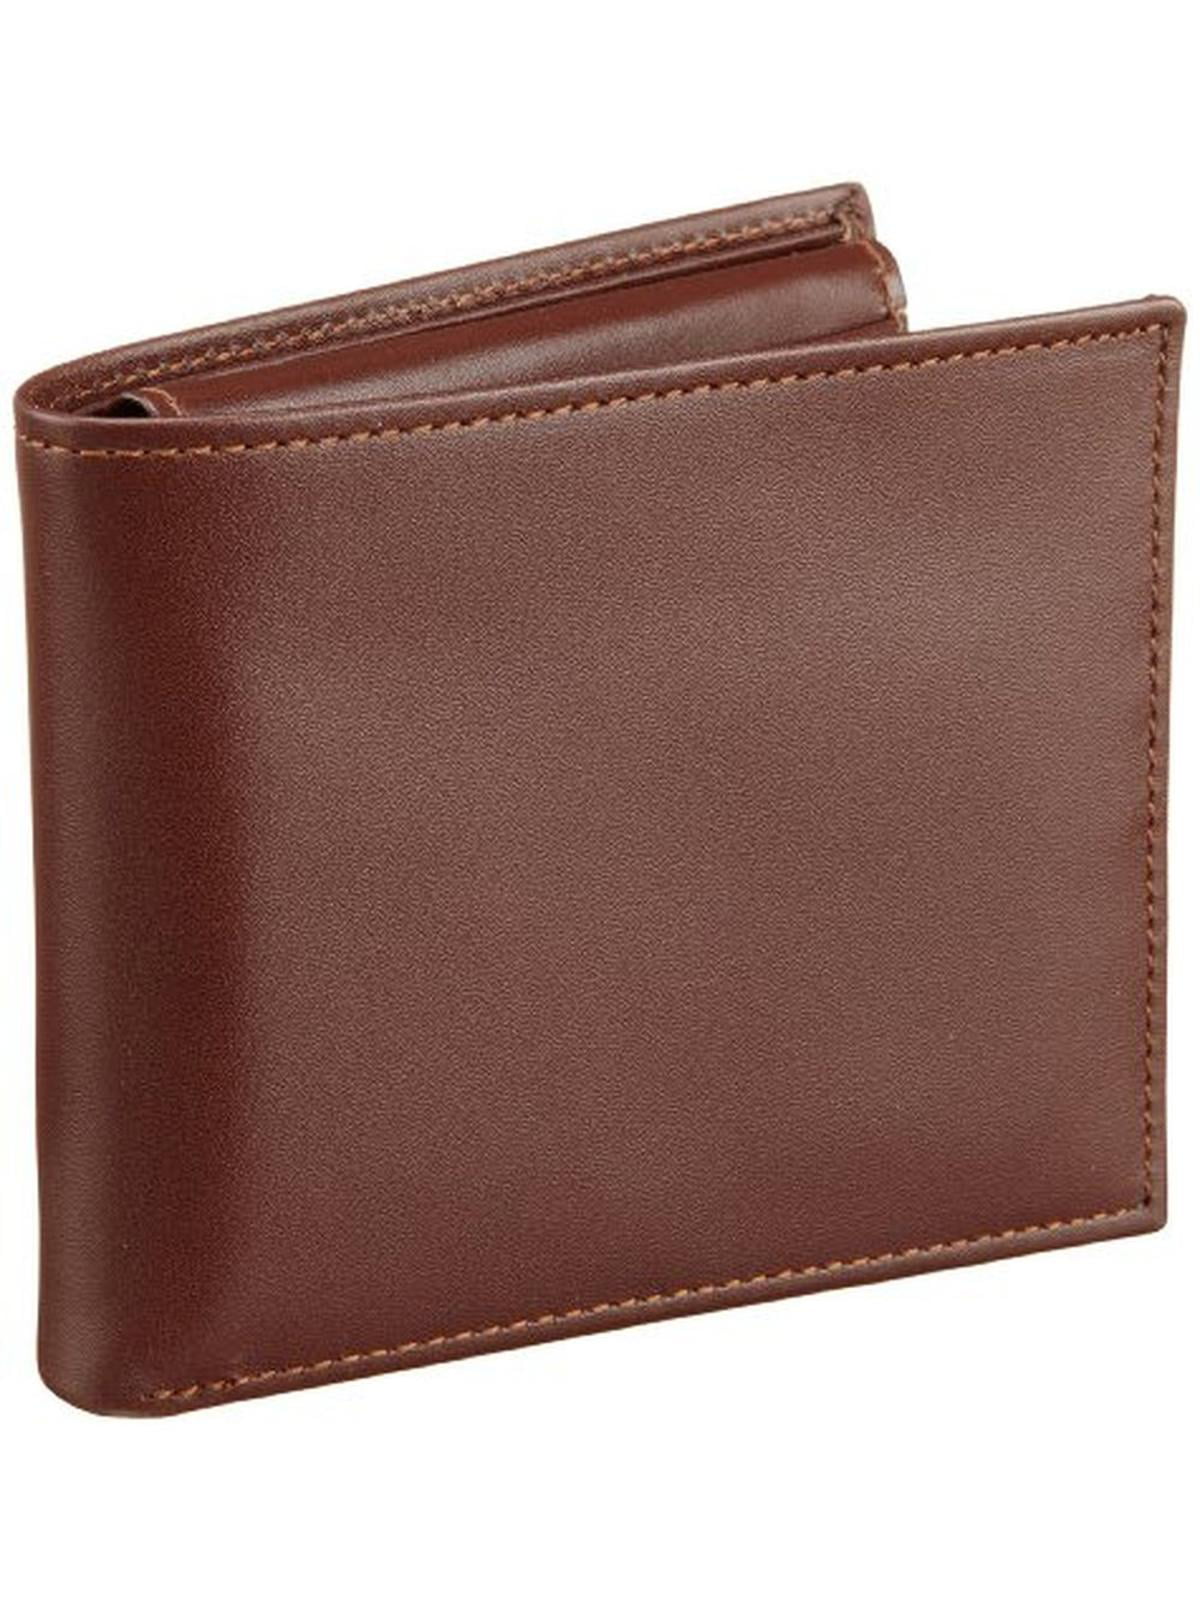 Perry Ellis Men's Sutton Passcase Wallet, Brown, One Size